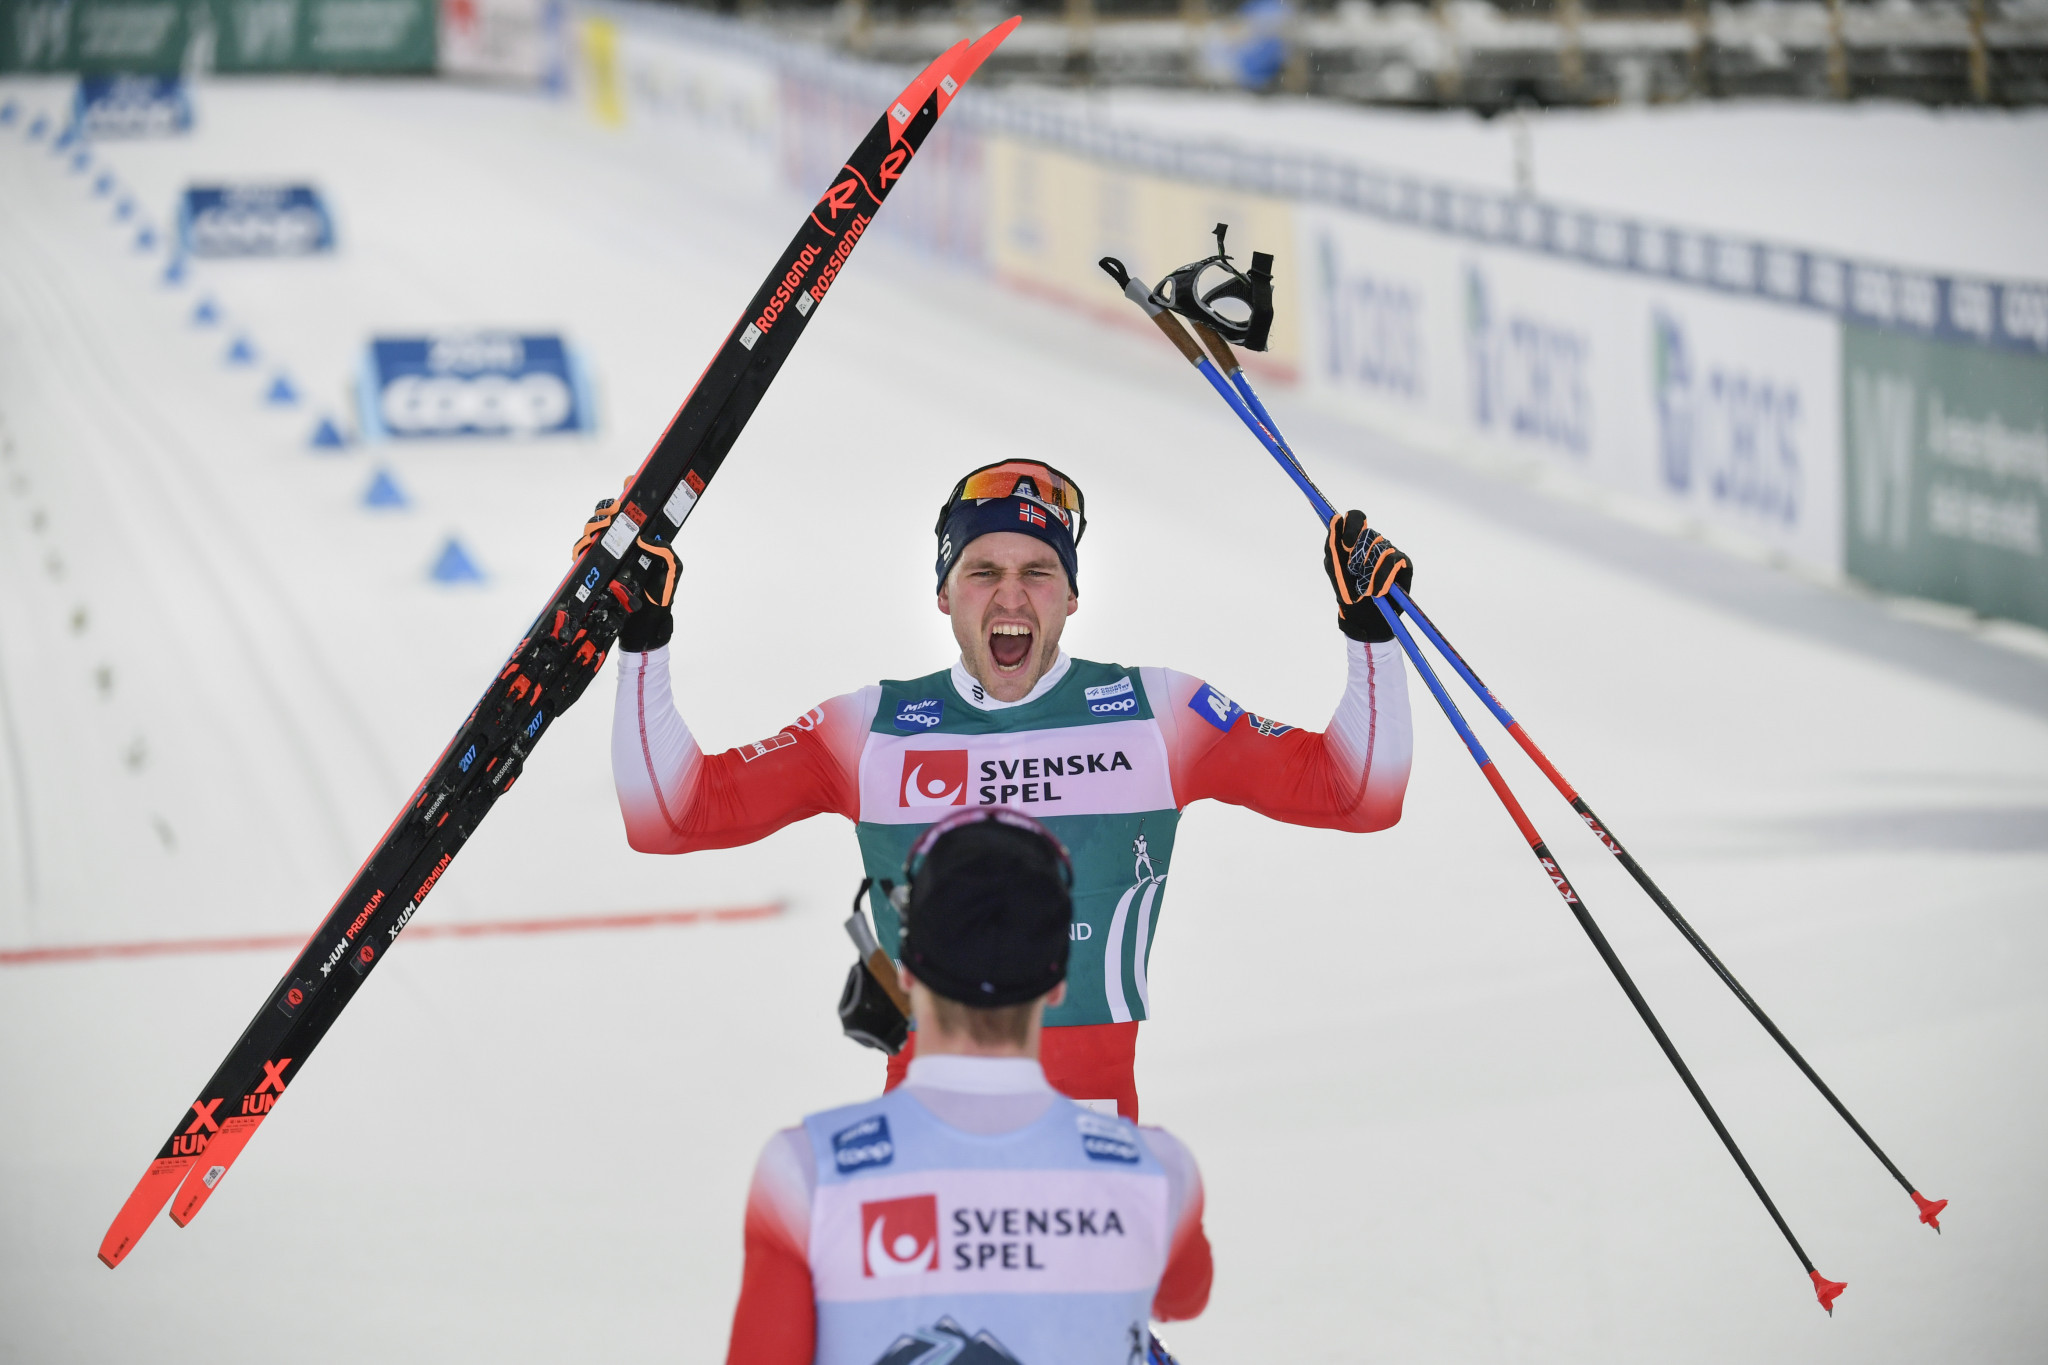 Pål Golberg won the men's Ski Tour title ©Getty Images